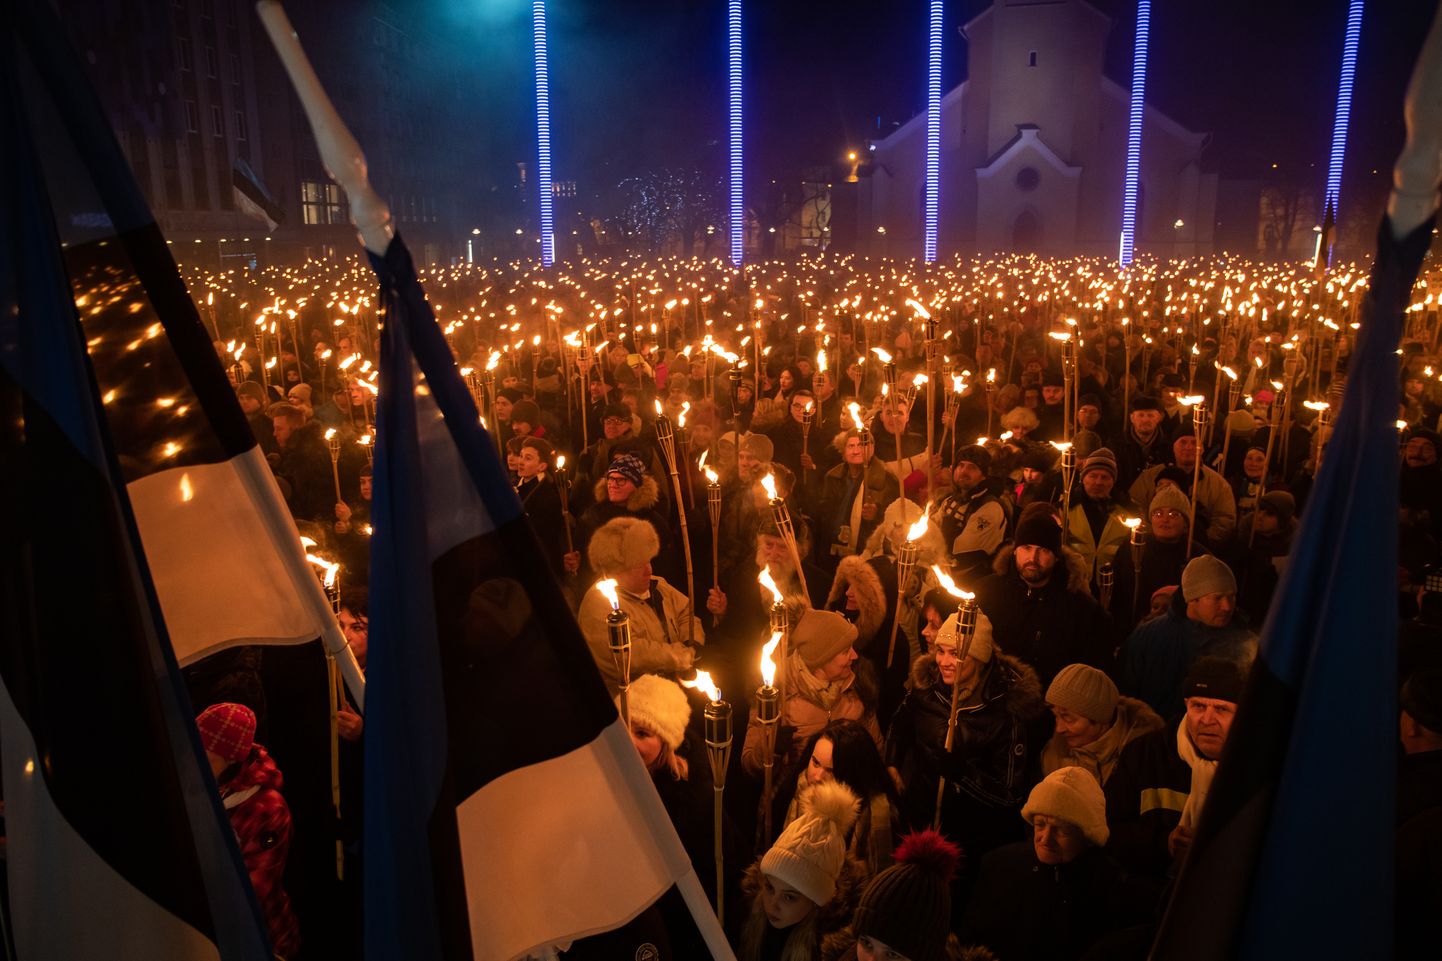 Kõik Eestis täna toimuvaid valimisi kajastanud artiklid välismeedias olid keskendunud parempopulistlikuks ja -äärmuslikuks parteiks nimetatud EKRE esiletõusule ning mitme lehe veergudel mainiti eelmisel nädalal korraldatud tõrvikurongkäiku.